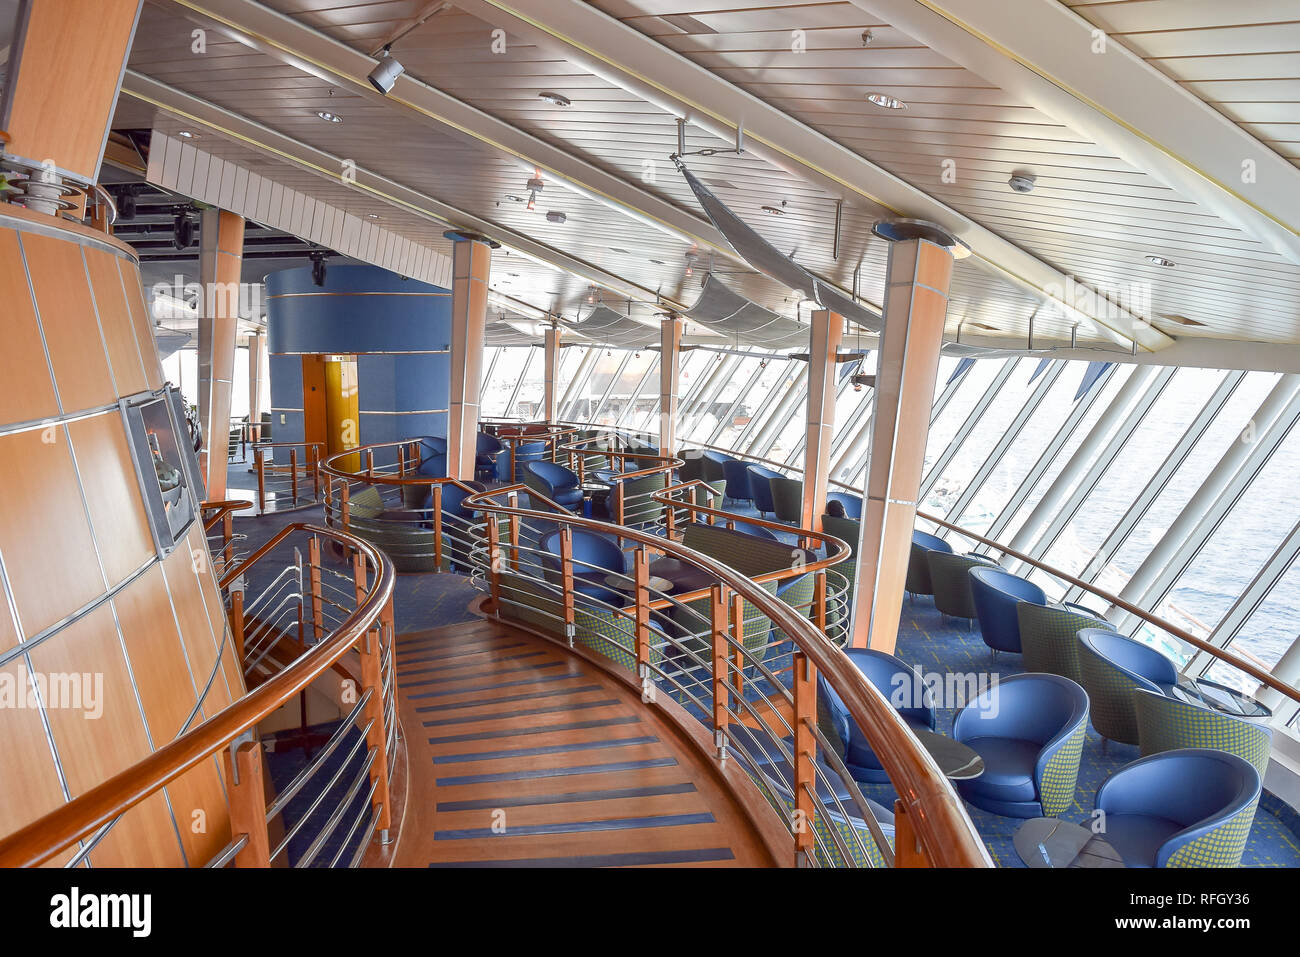 Océan Atlantique - 03 décembre 2015 : le décor intérieur à bord du Royal Caribbean Enchantment of the Seas Cruise Ship Banque D'Images